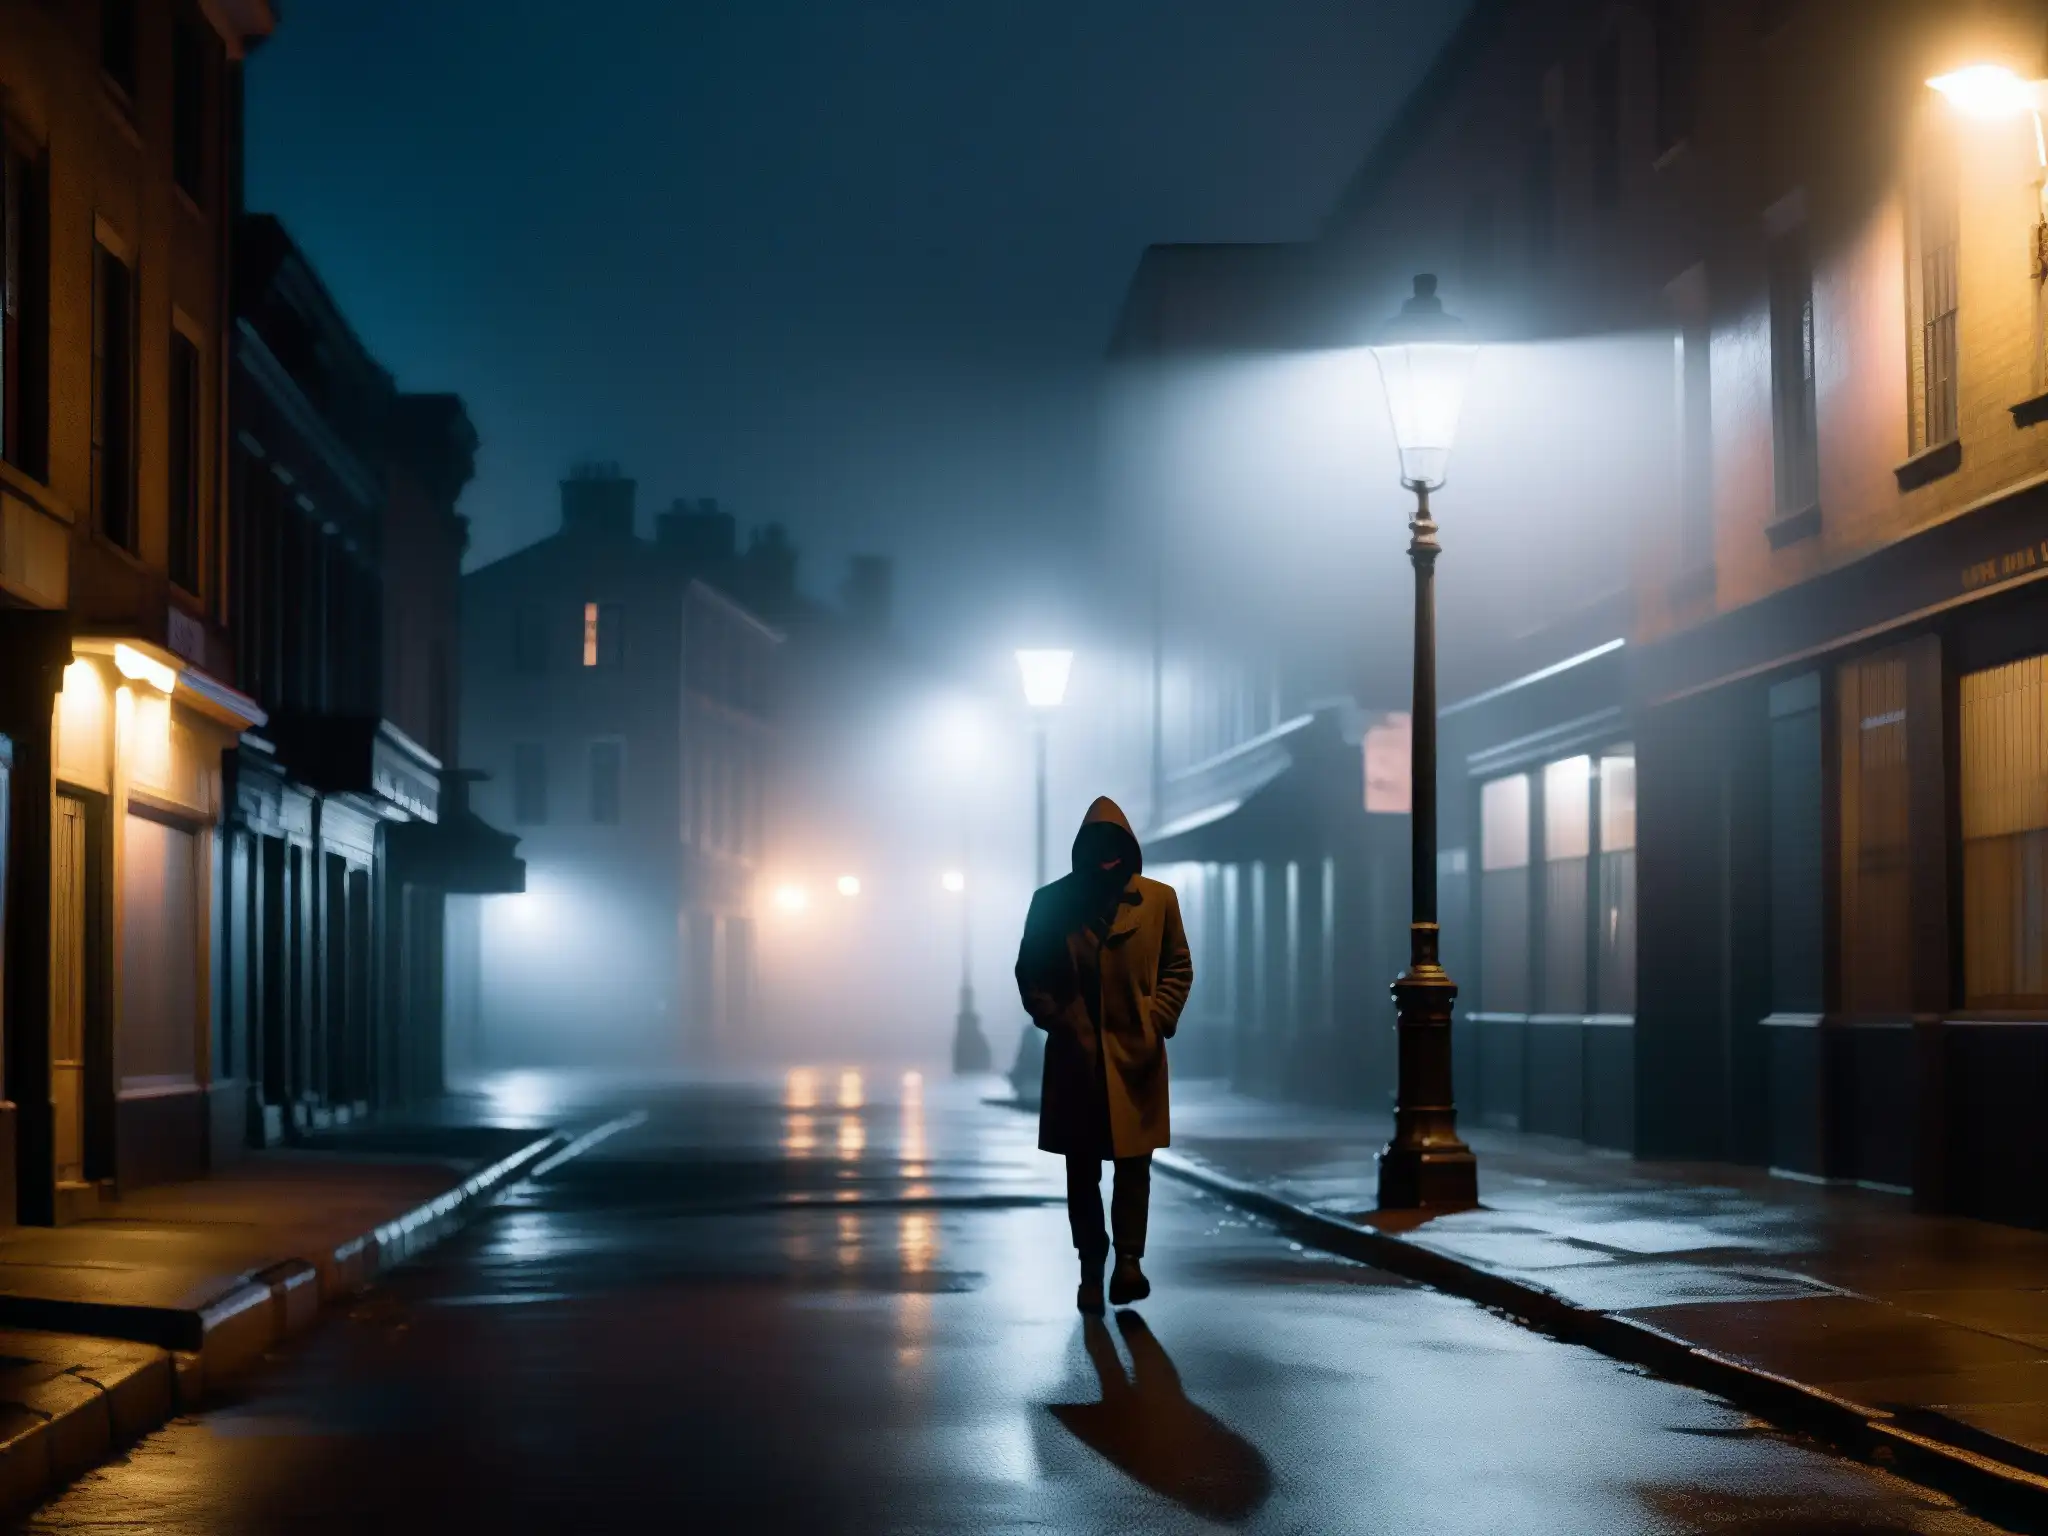 En una oscura calle urbana, una figura solitaria bajo la luz titilante de una farola, sosteniendo una afilada hoja